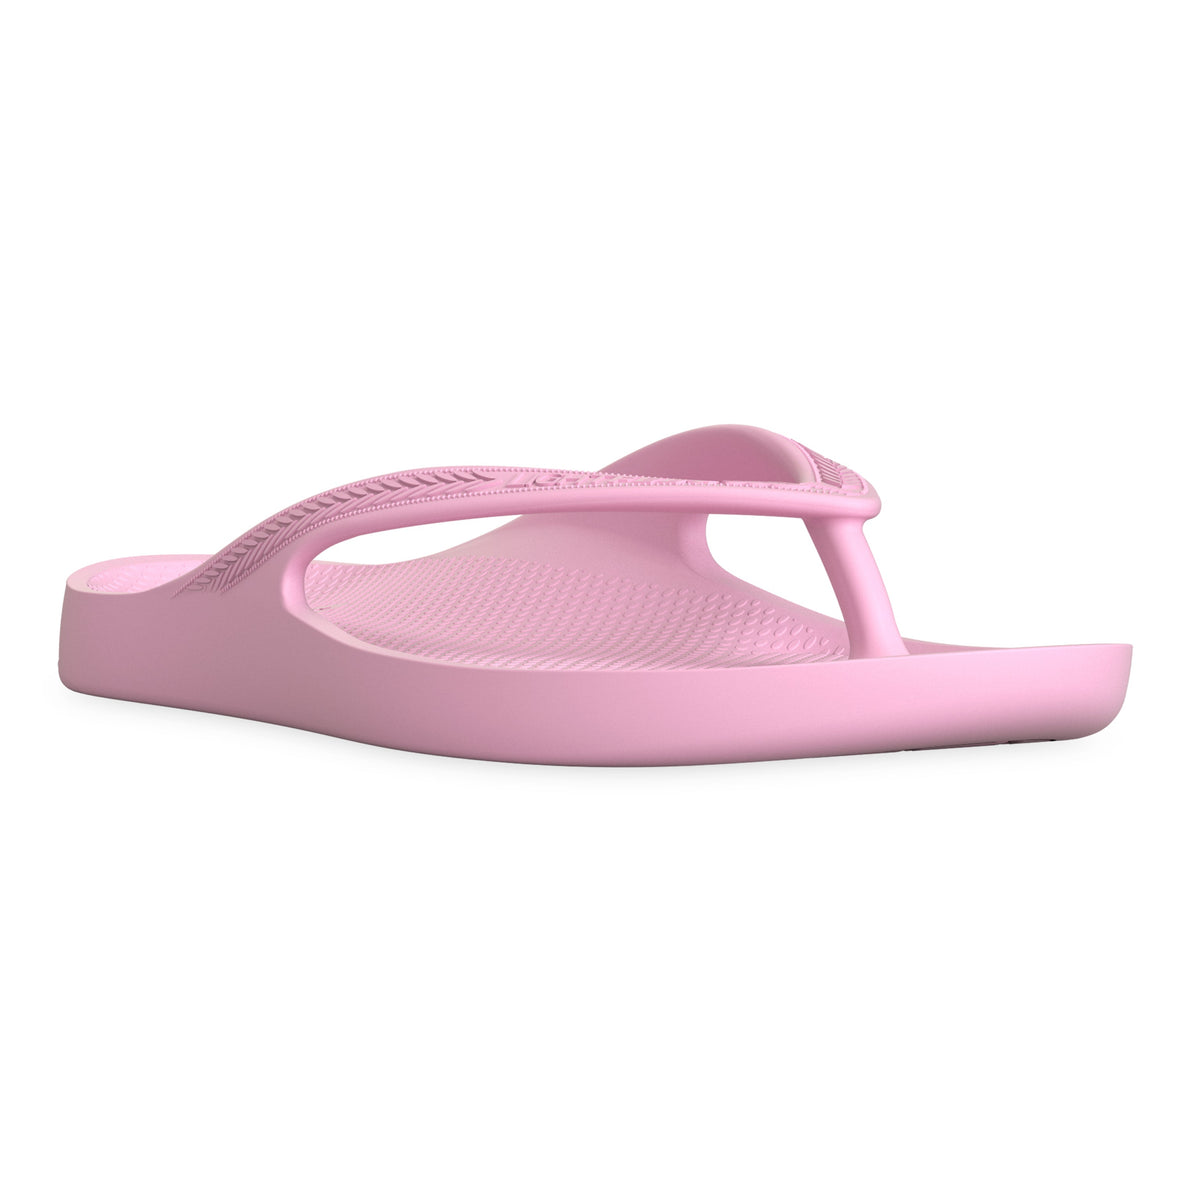 LightFeet Arch Support Flip Flops/Thongs - Pink